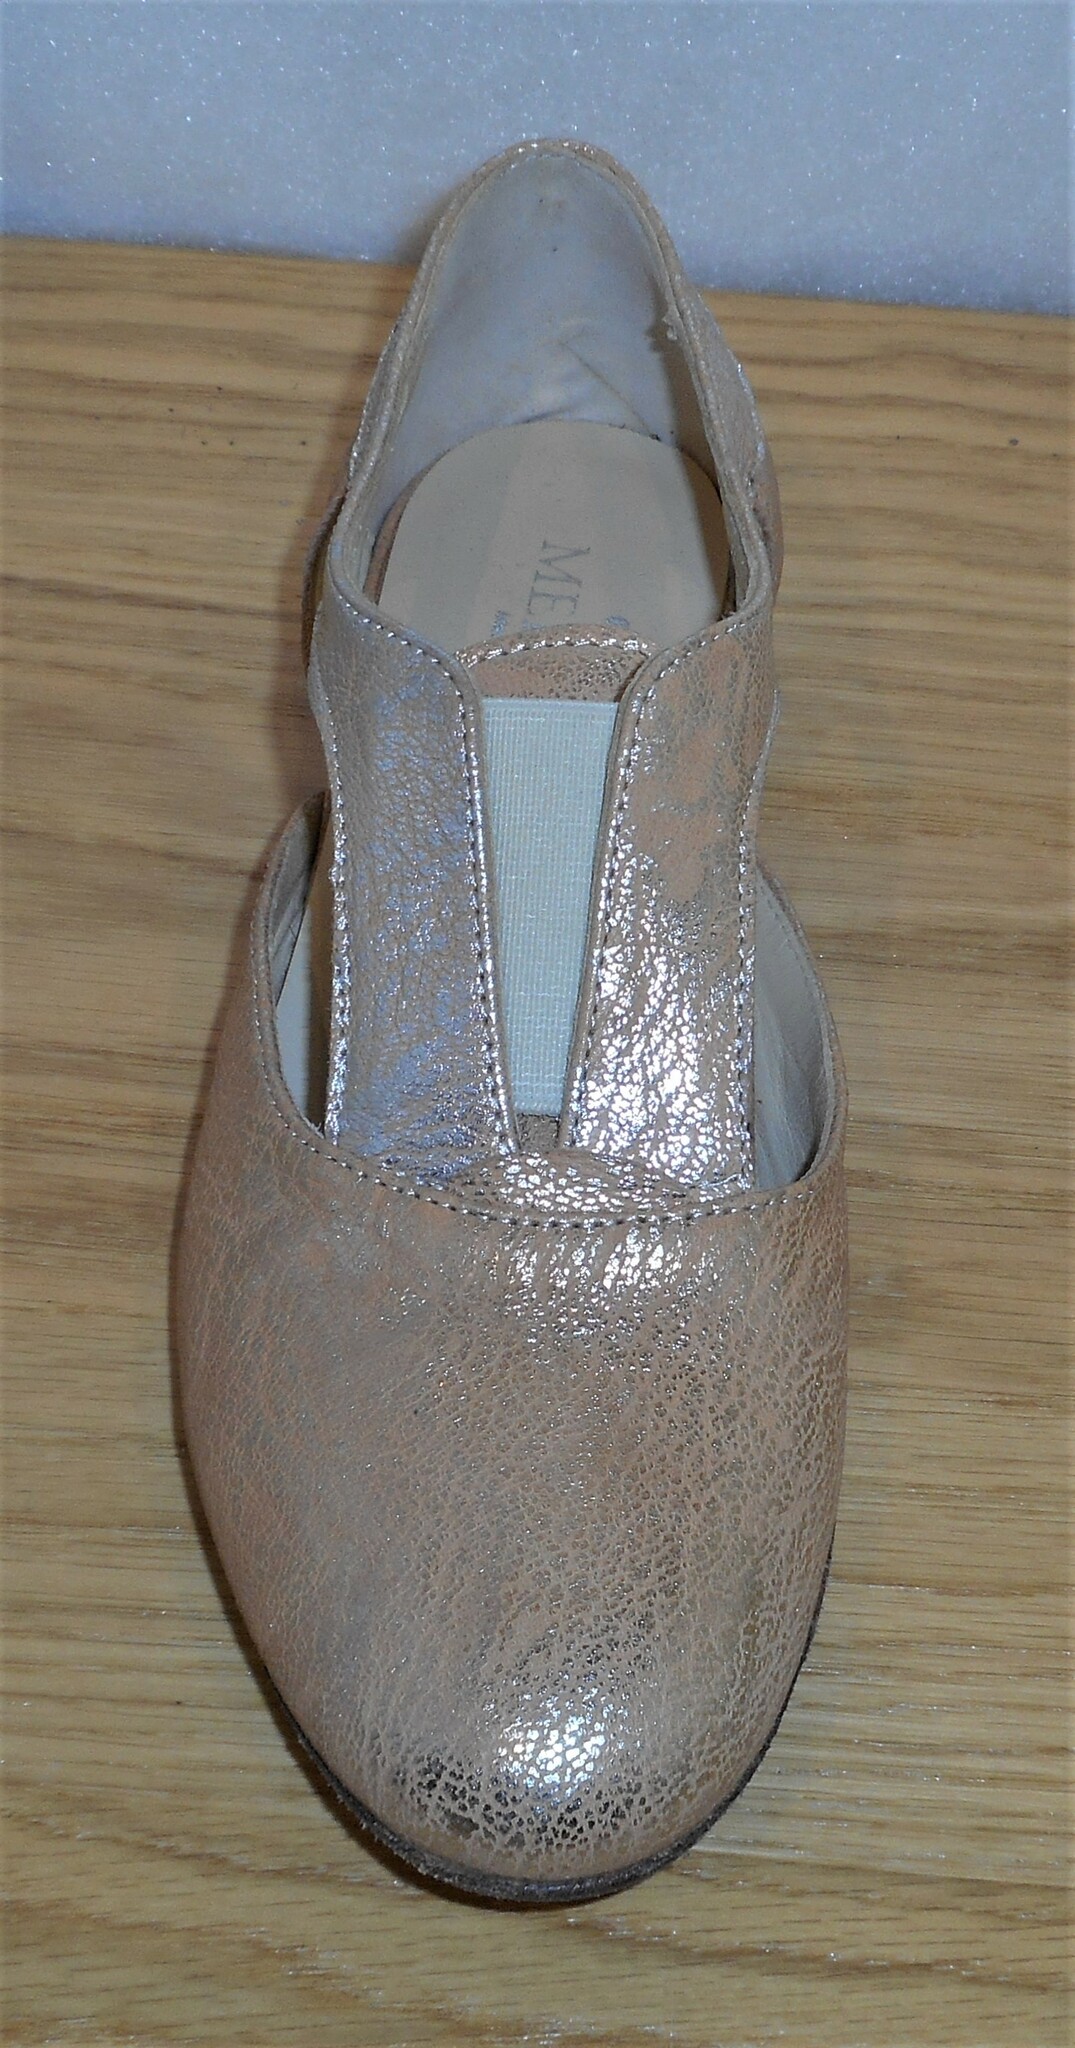 Guldbeige sko med öppningar i sidan - Fabrikat Merygen